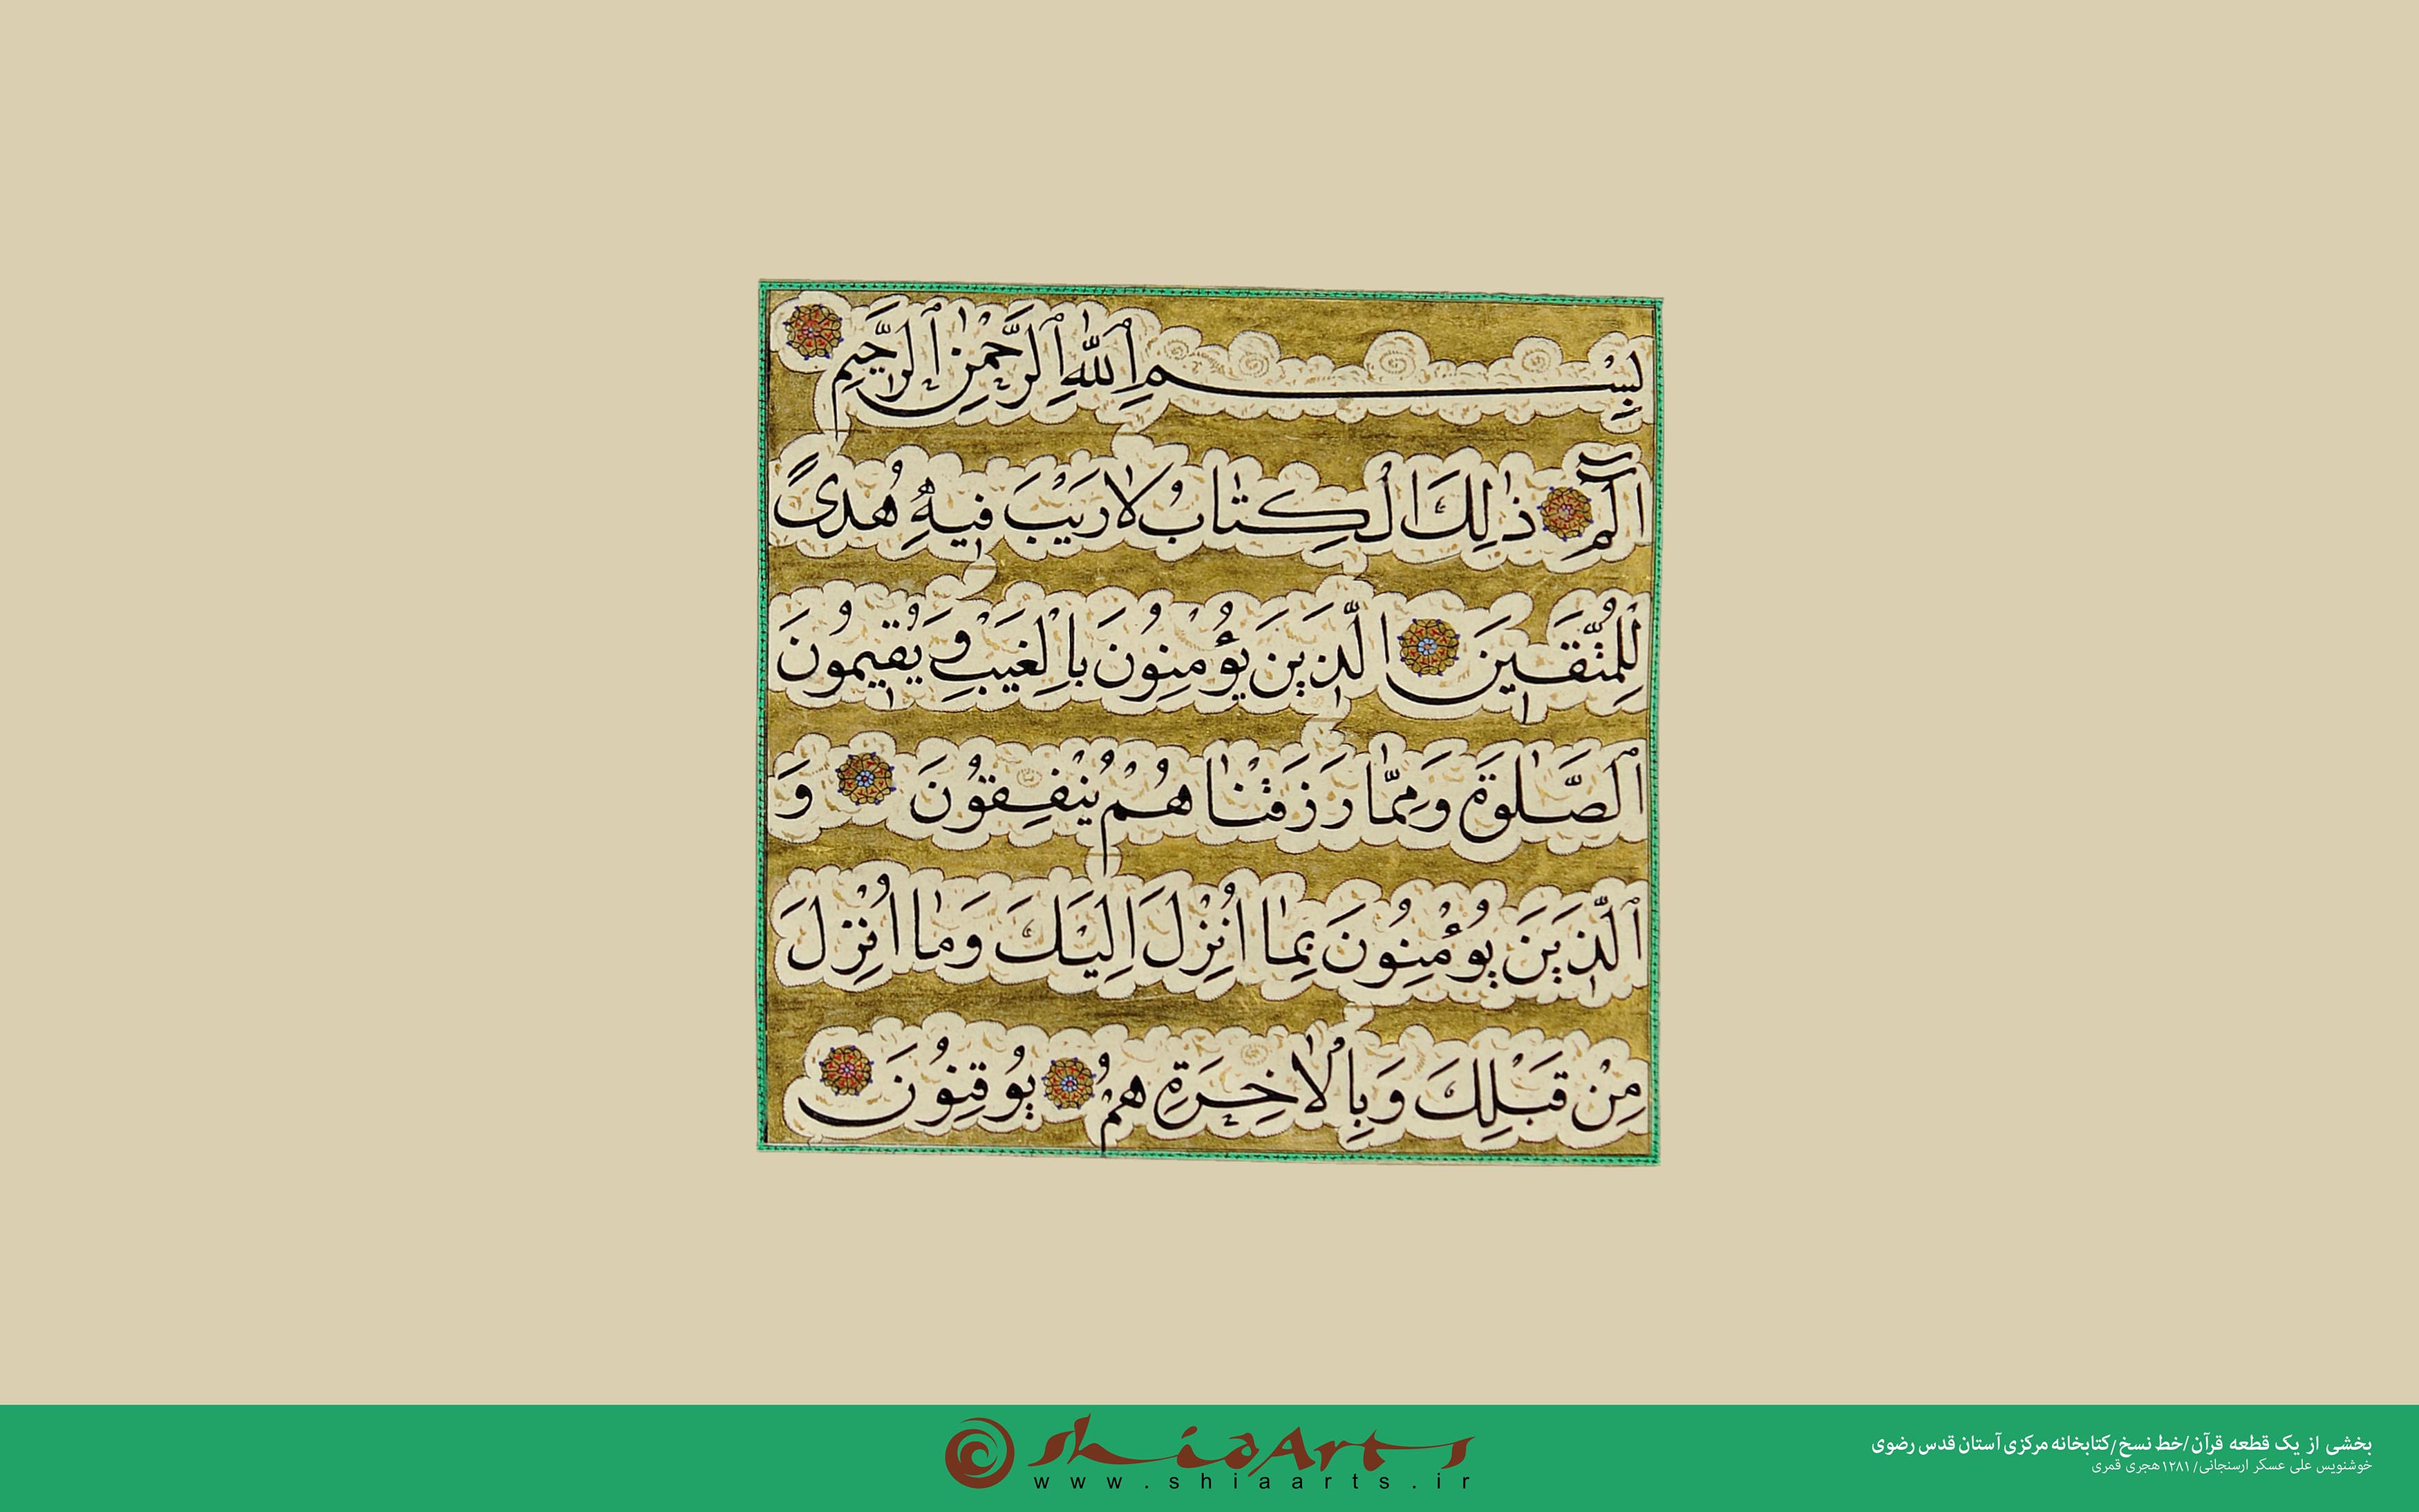 بخشی از یک قطعه قرآن